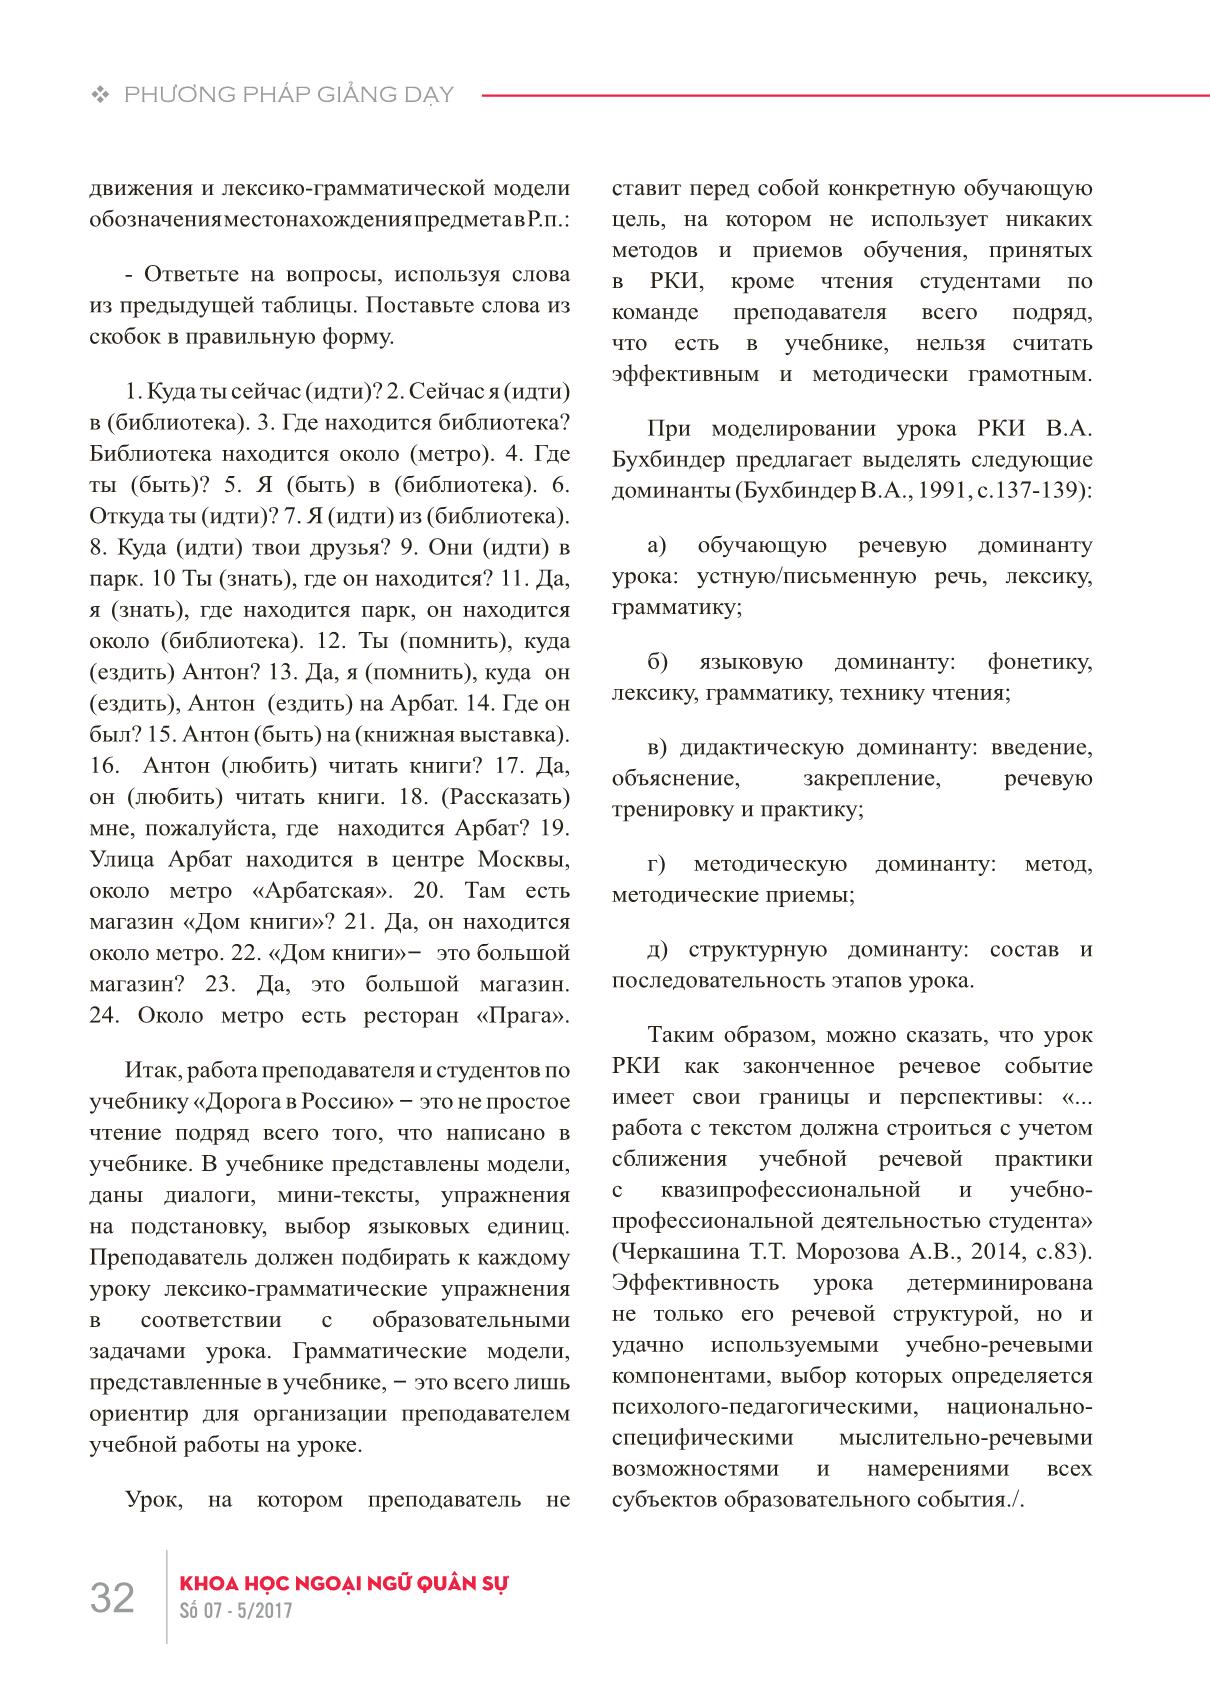 Các lỗi về phương pháp giảng dạy khi xử lý văn bản trong giờ dạy tiếng Nga như một ngoại ngữ trang 7